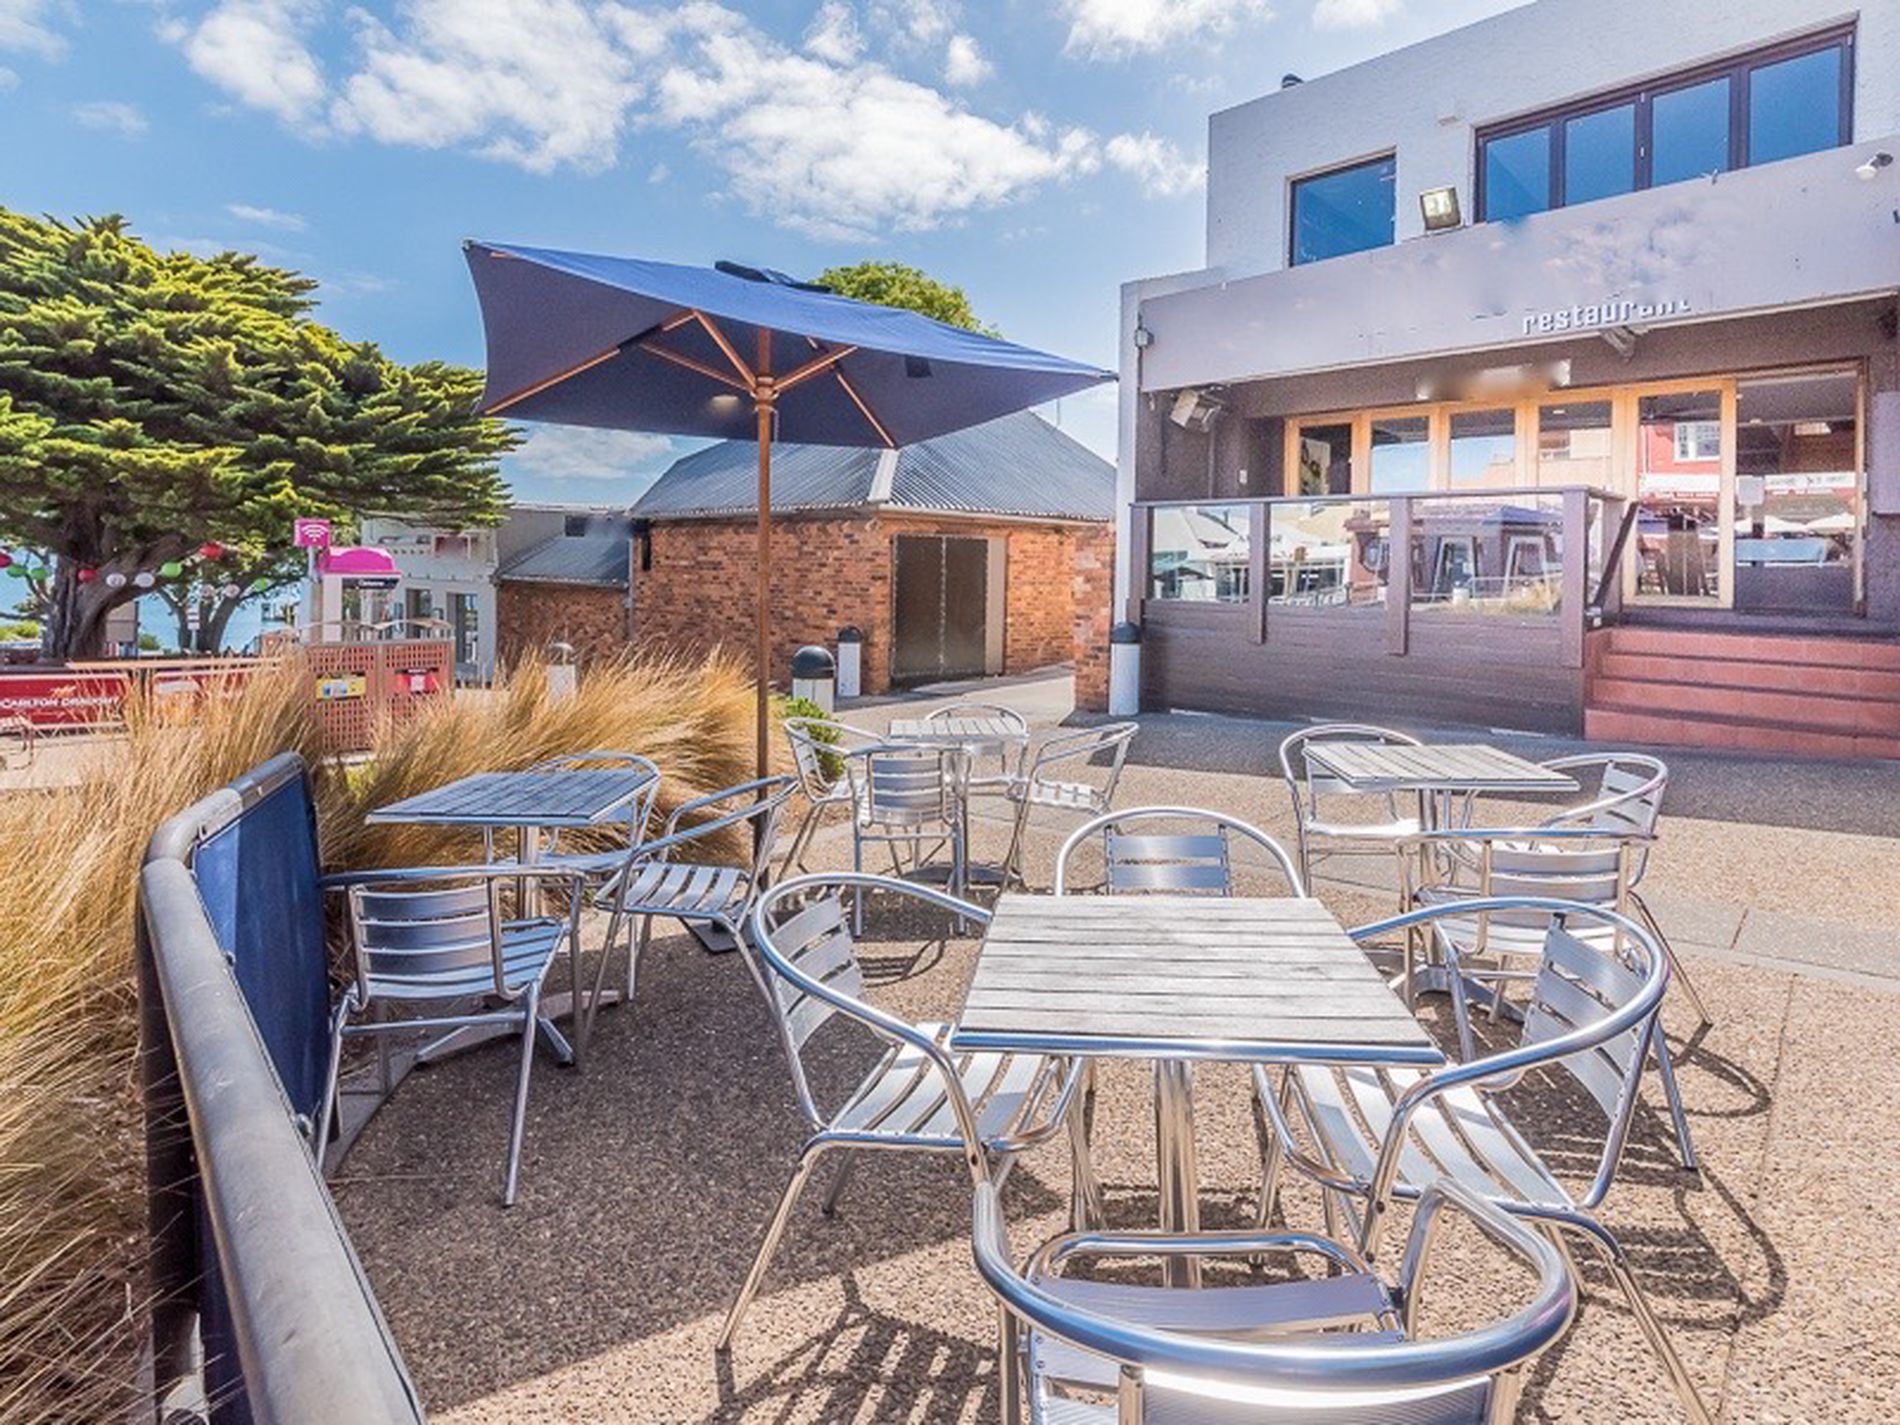 SOLD - Restaurant Bar Cafe Business For Sale Phillip Island
